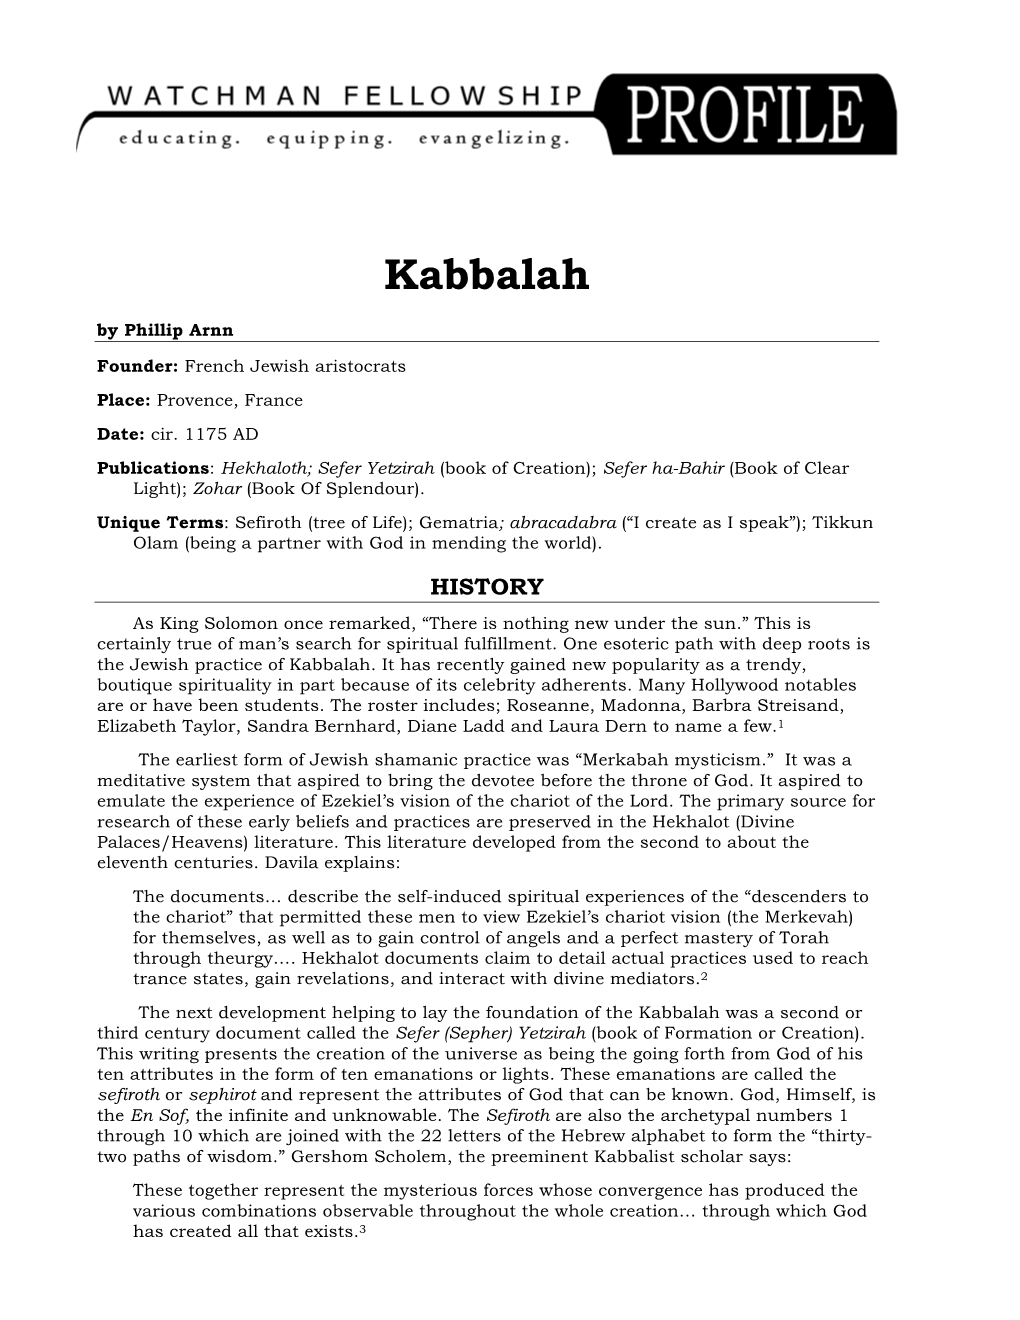 Kabbalah by Phillip Arnn